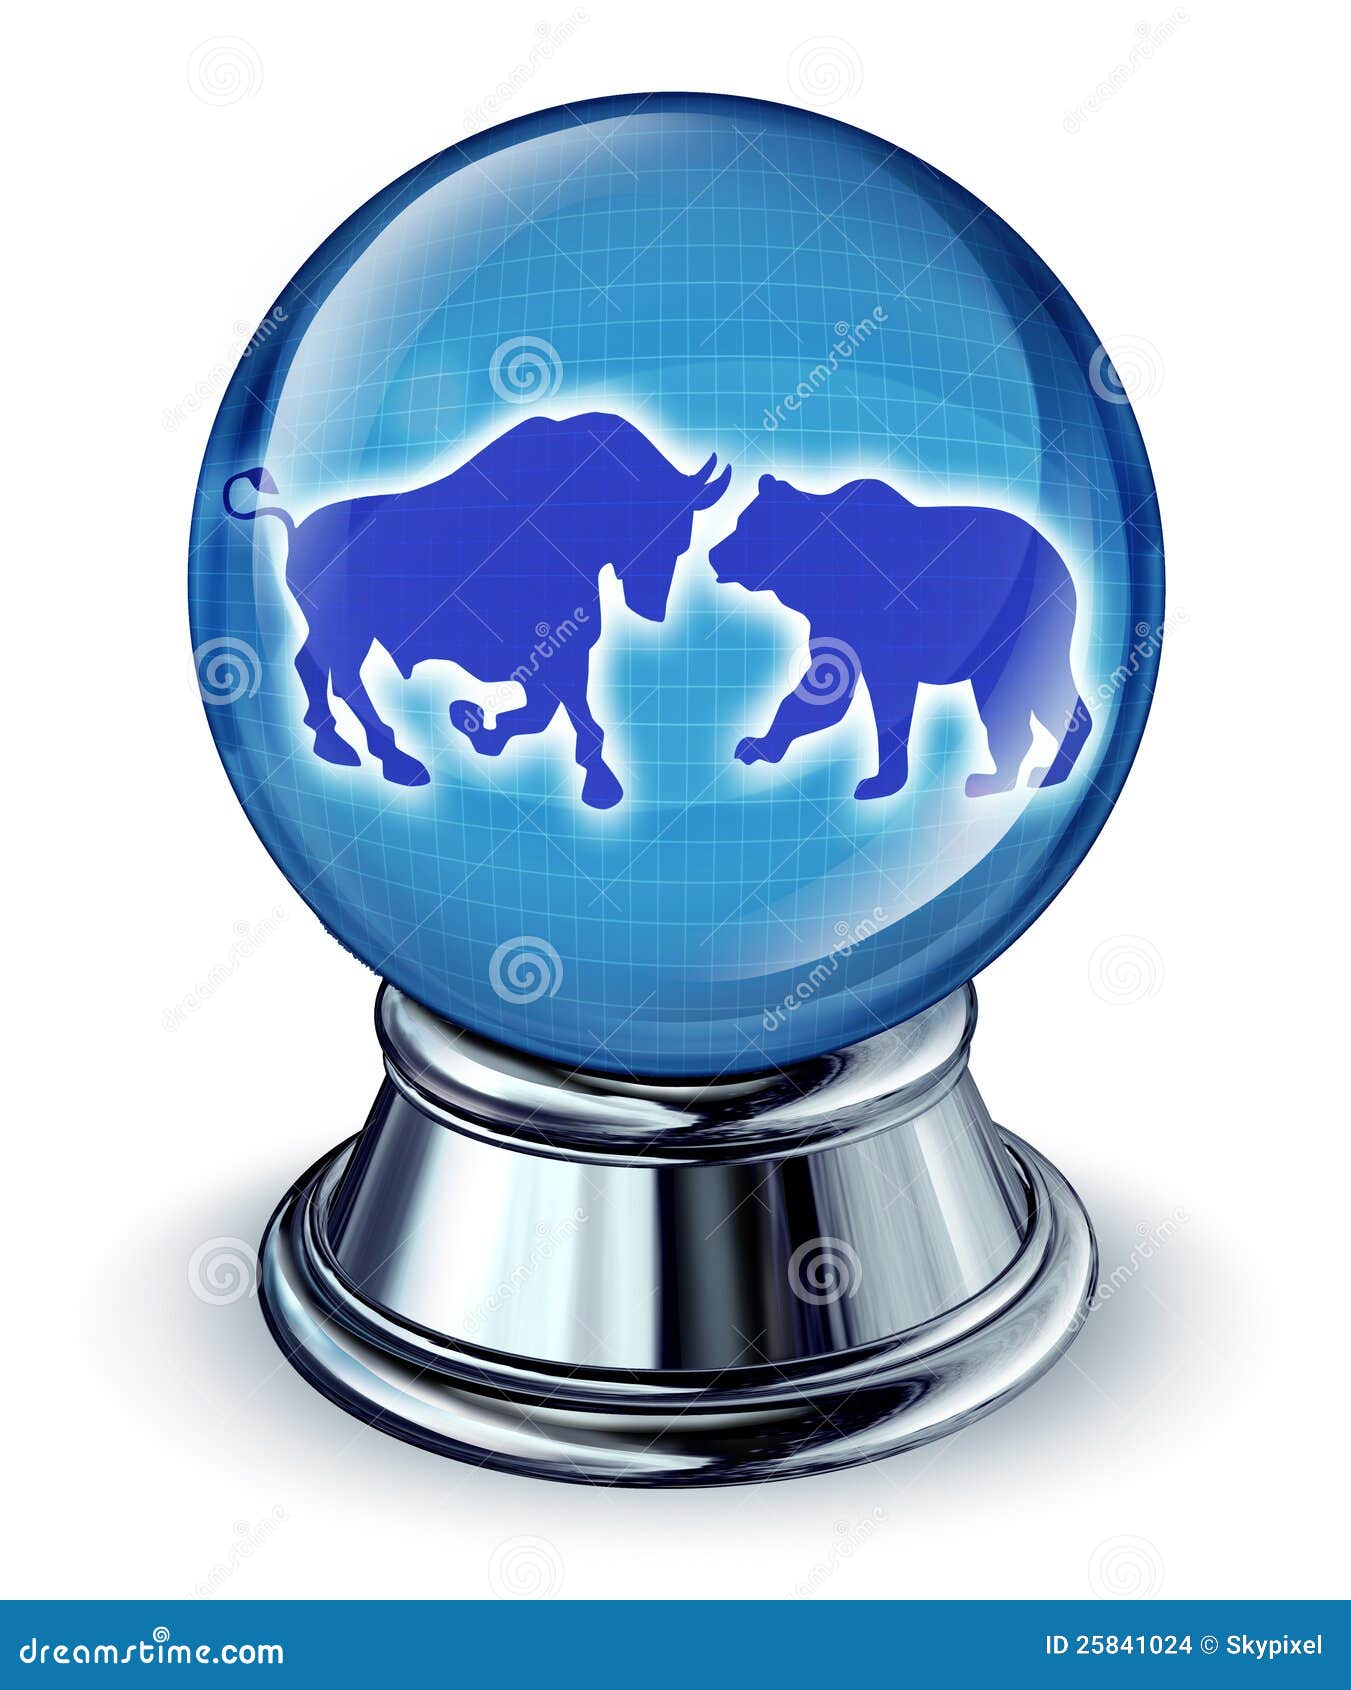 Aktiemarknadförutsägelsear som ett finansiellt begrepp med en kristallkula och en tjur och björnen i reflexionen som ett symbol av den framtida handeln tenderar.